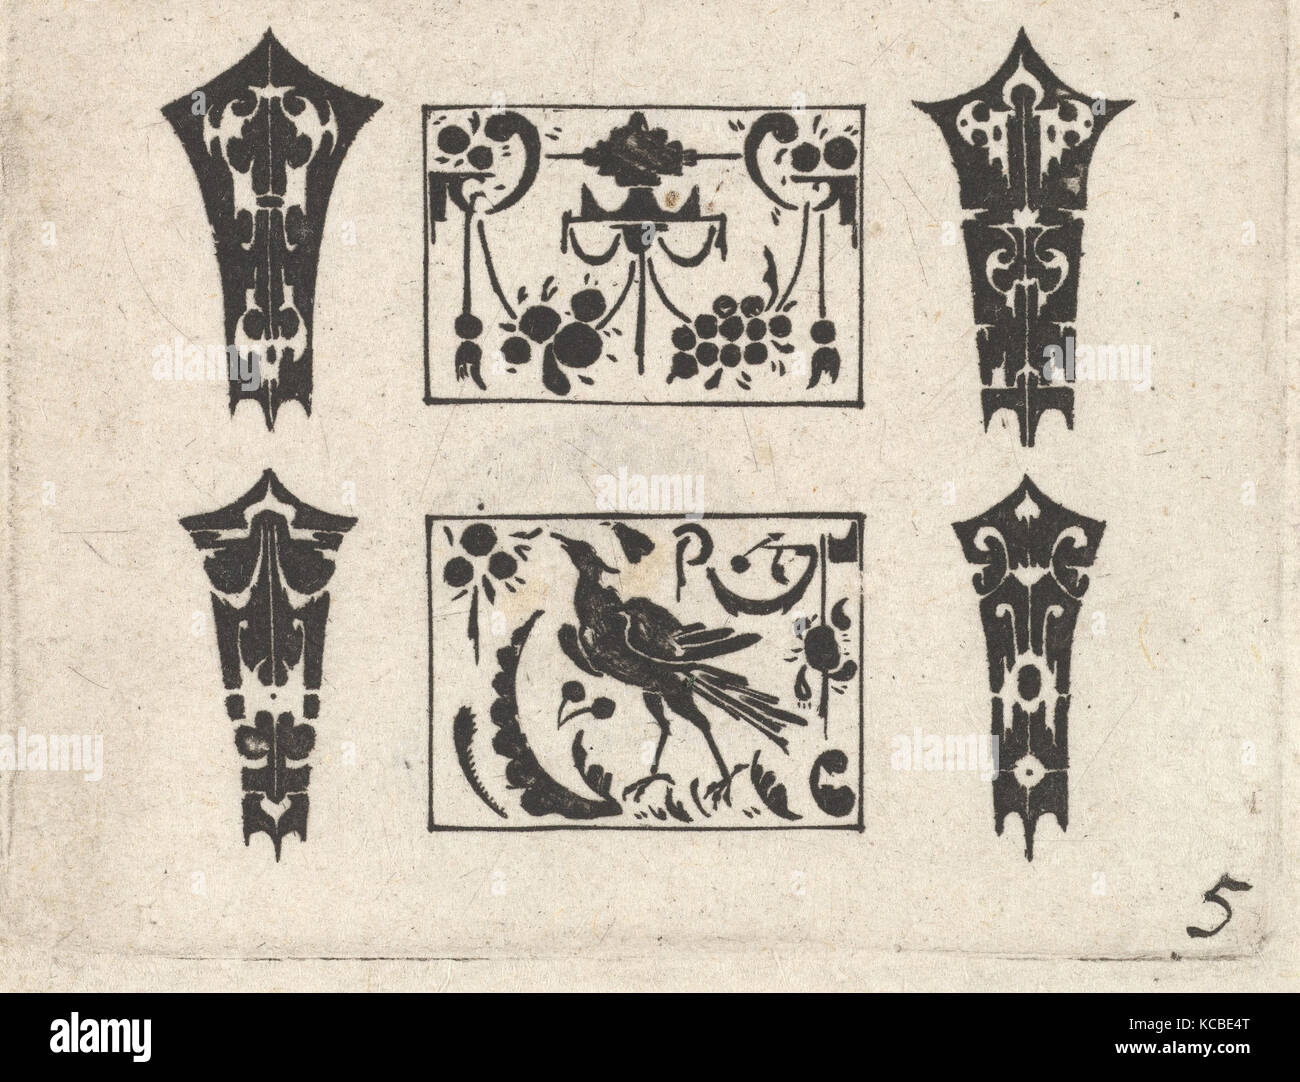 Blackwork Print with a Symmetrical Schweifwerk Pattern, After Hans de Bull, ca. 1620 Stock Photo